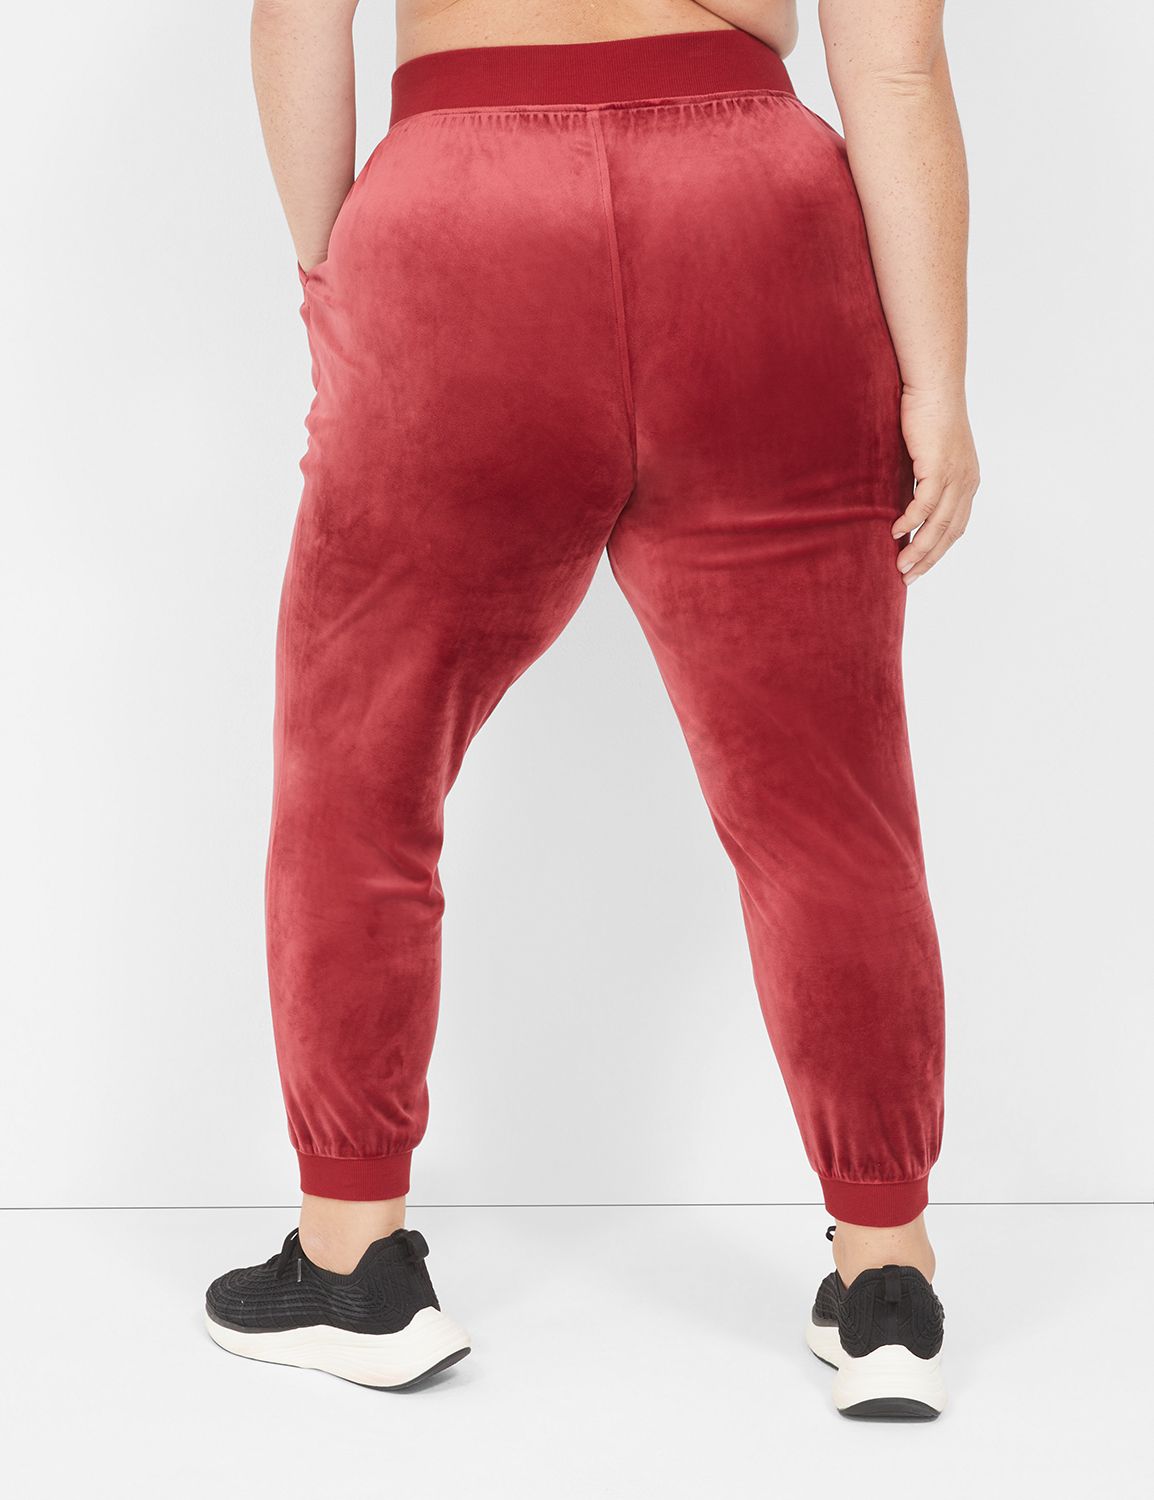 Buy Sweatpants for Women Online - Upto 50% Off